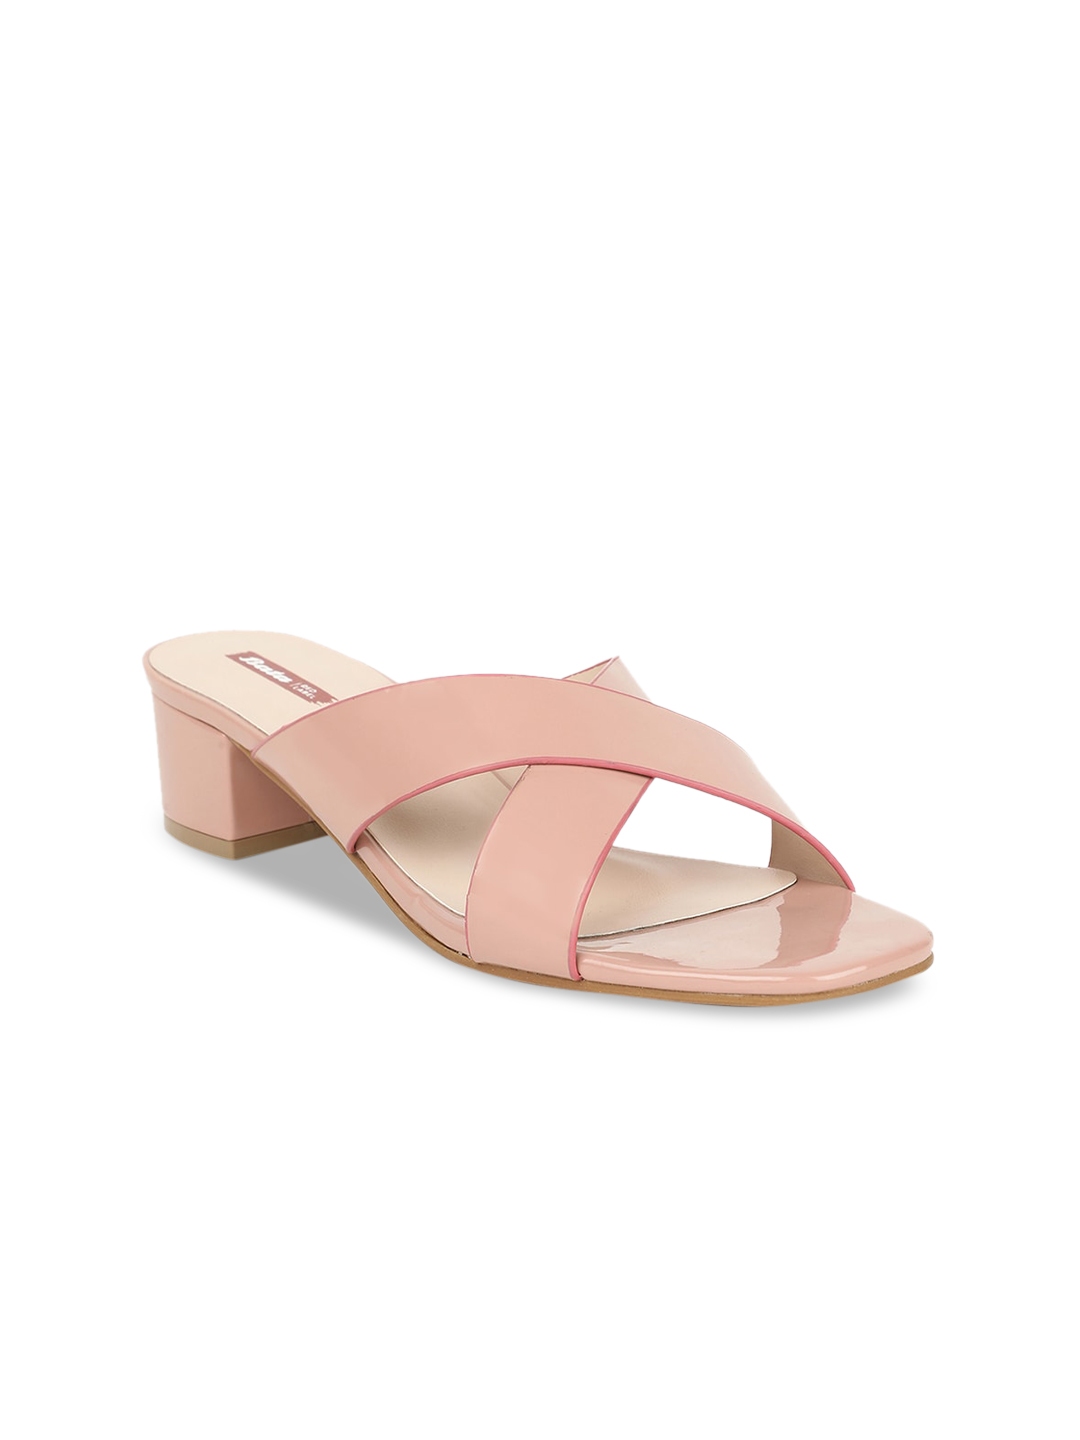 Buy Bata Women Pink Solid Sandals - Heels for Women 14047332 | Myntra